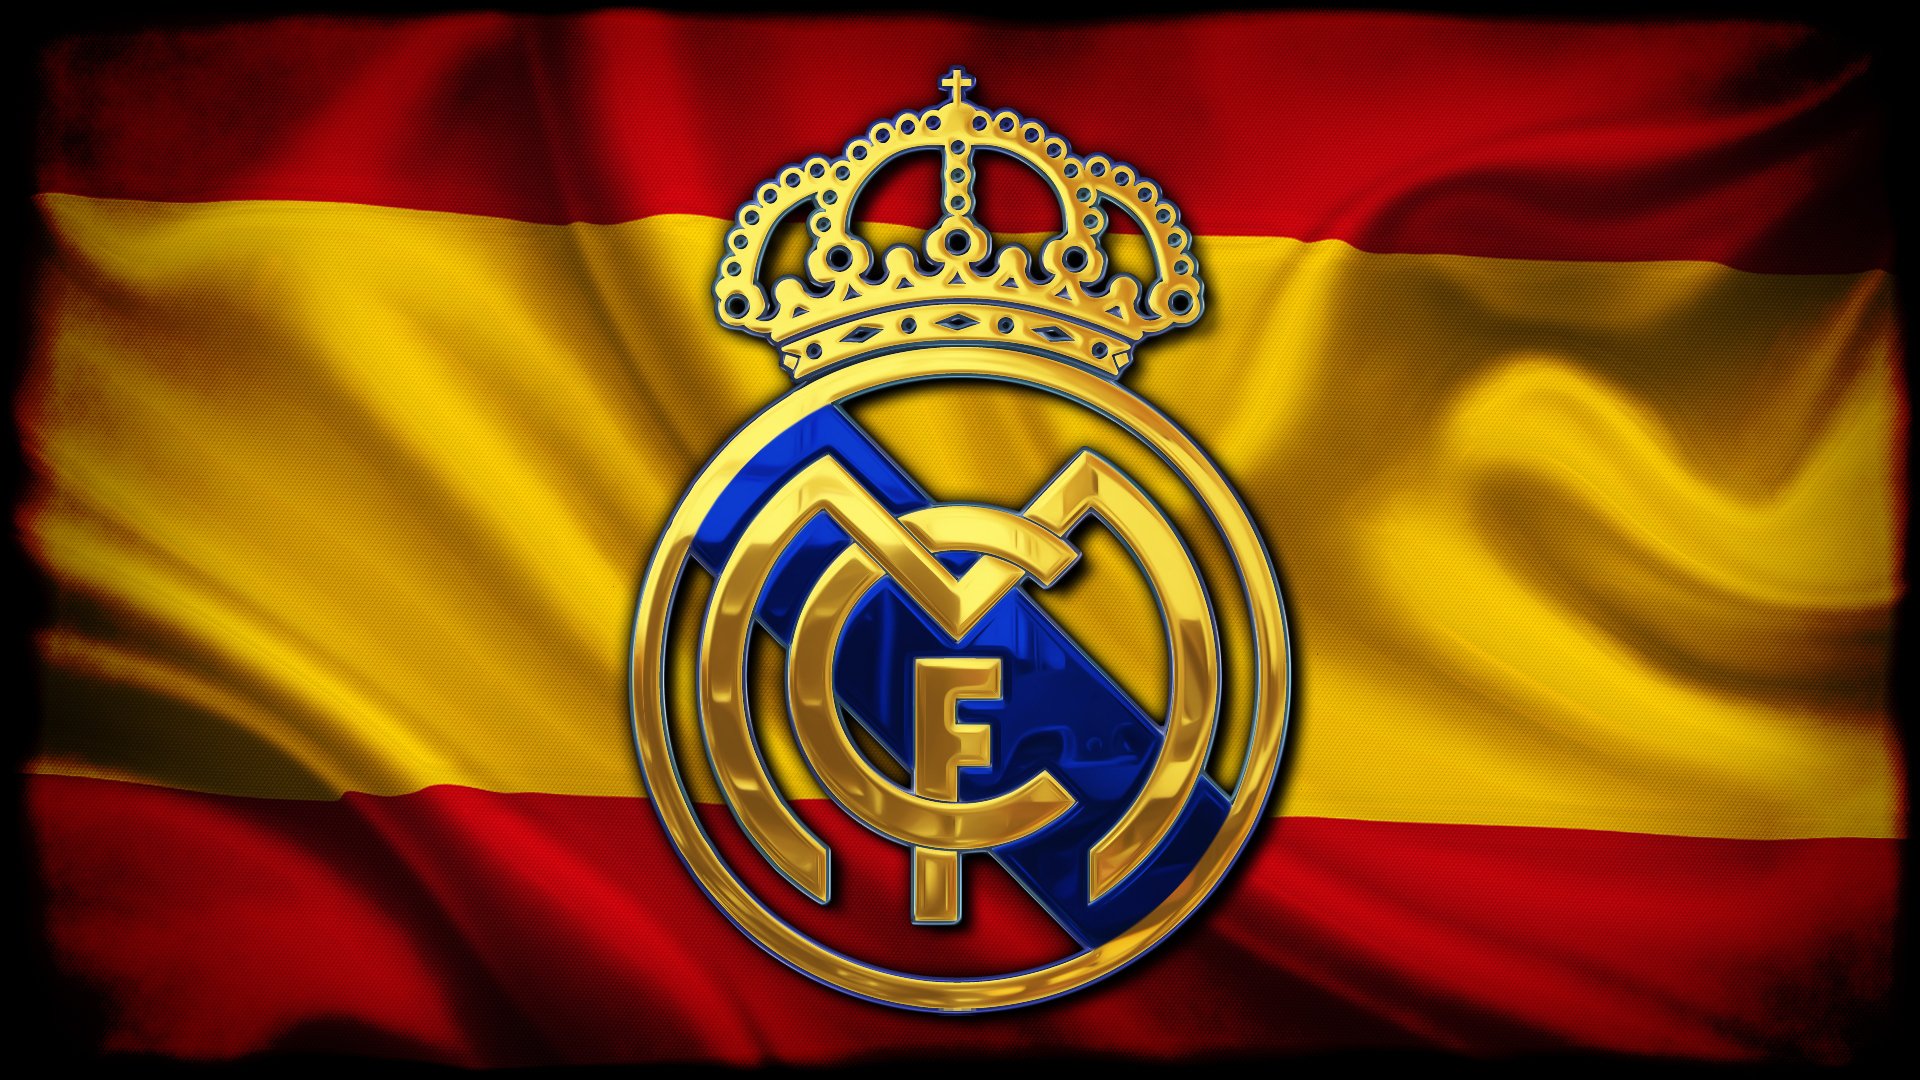 logo-de-real-madrid-en-bandera-de-espana-3940.jpg